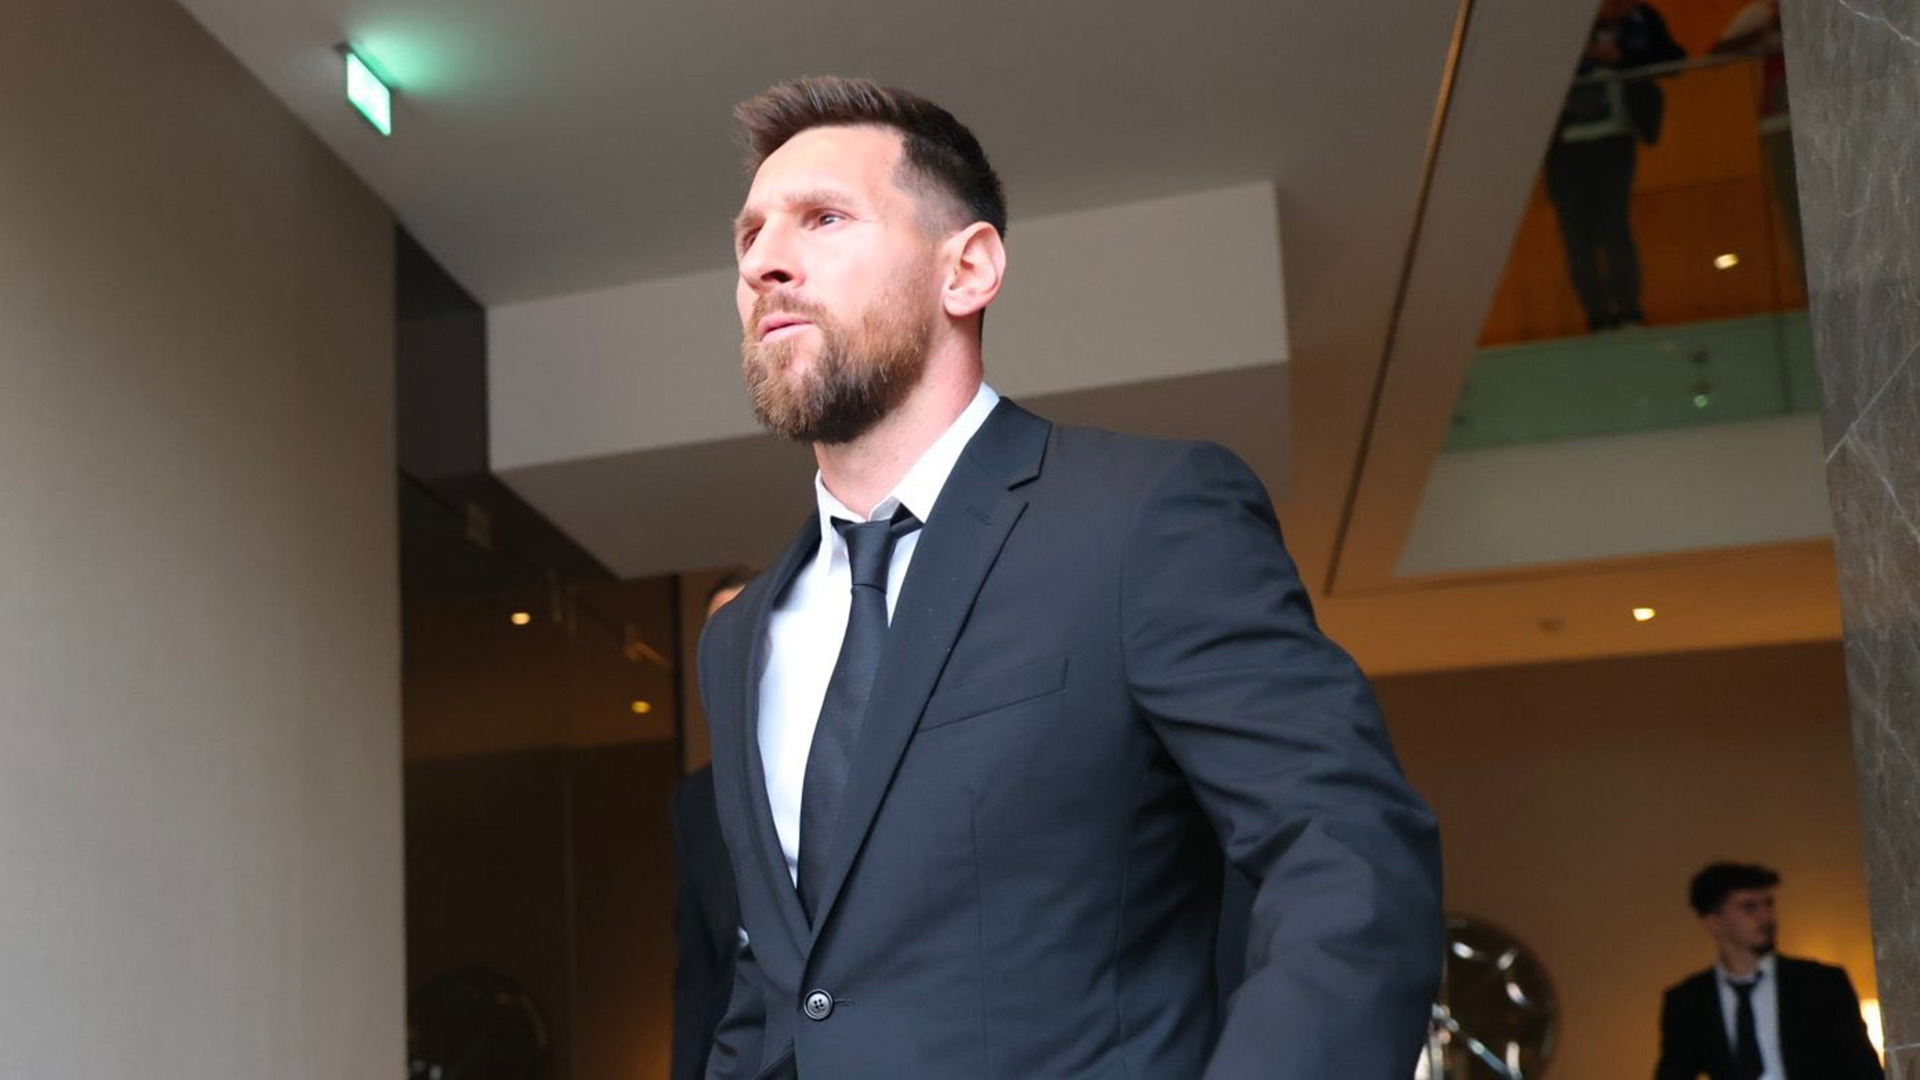 Lionel Messi incursiona en el mundo de los negocios con una empresa que invertirá en tecnología. comunicación y deportes (@PSG_espanol)